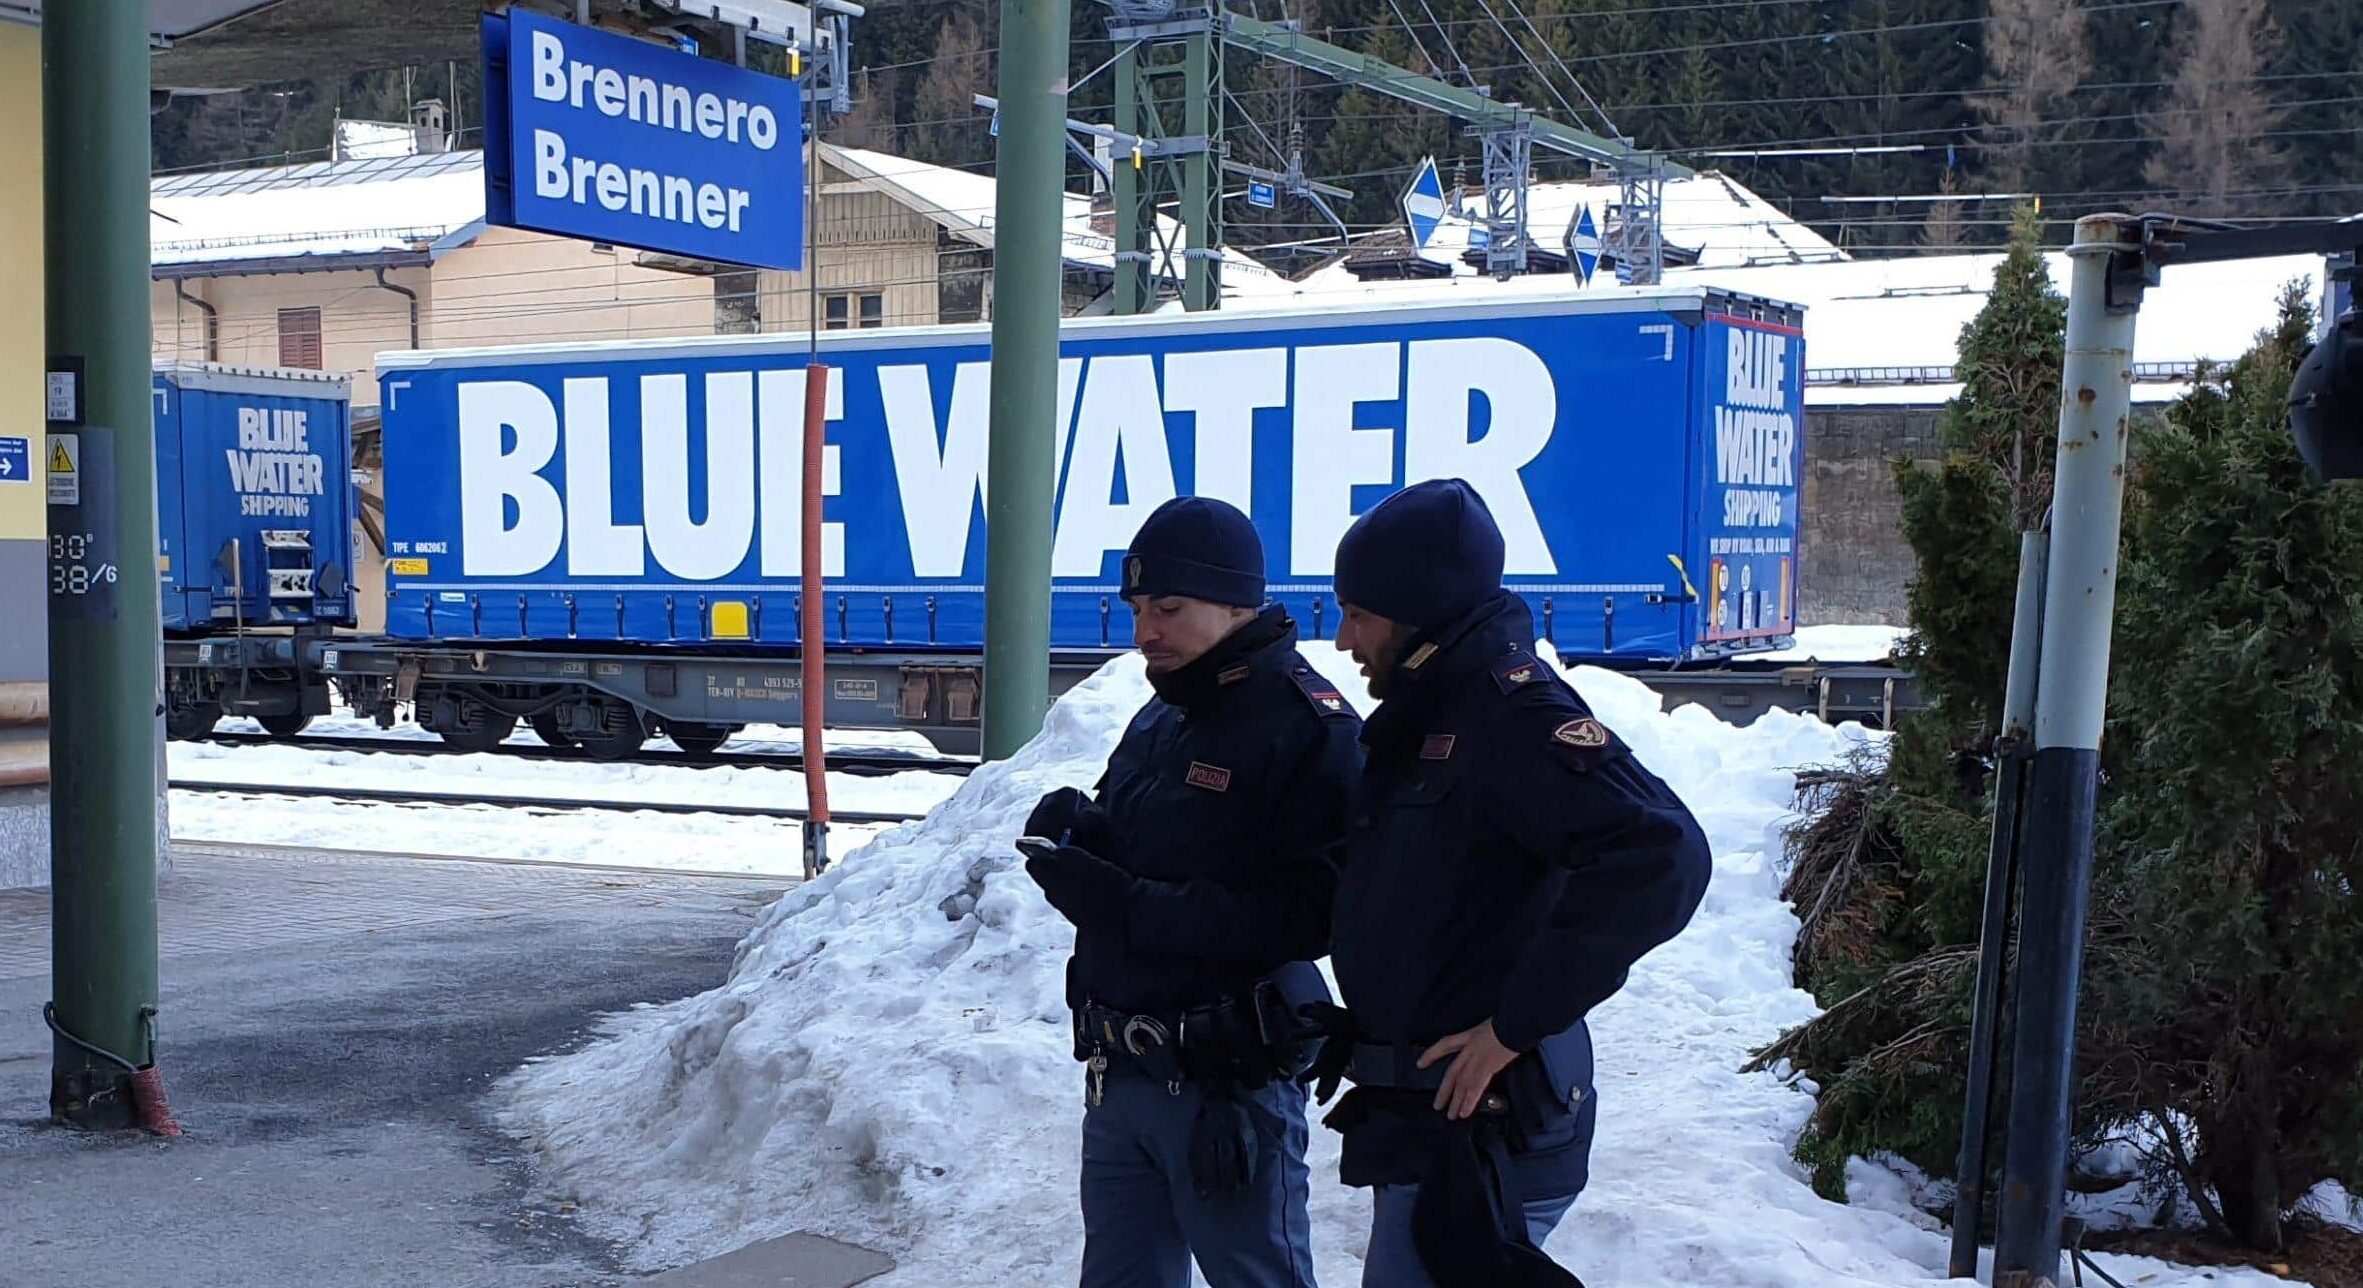 Controlli della Polizia al Brennero sui passeggeri degli autobus internazionali. Arrestato un cittadino italiano condannato per reati contro il patrimonio